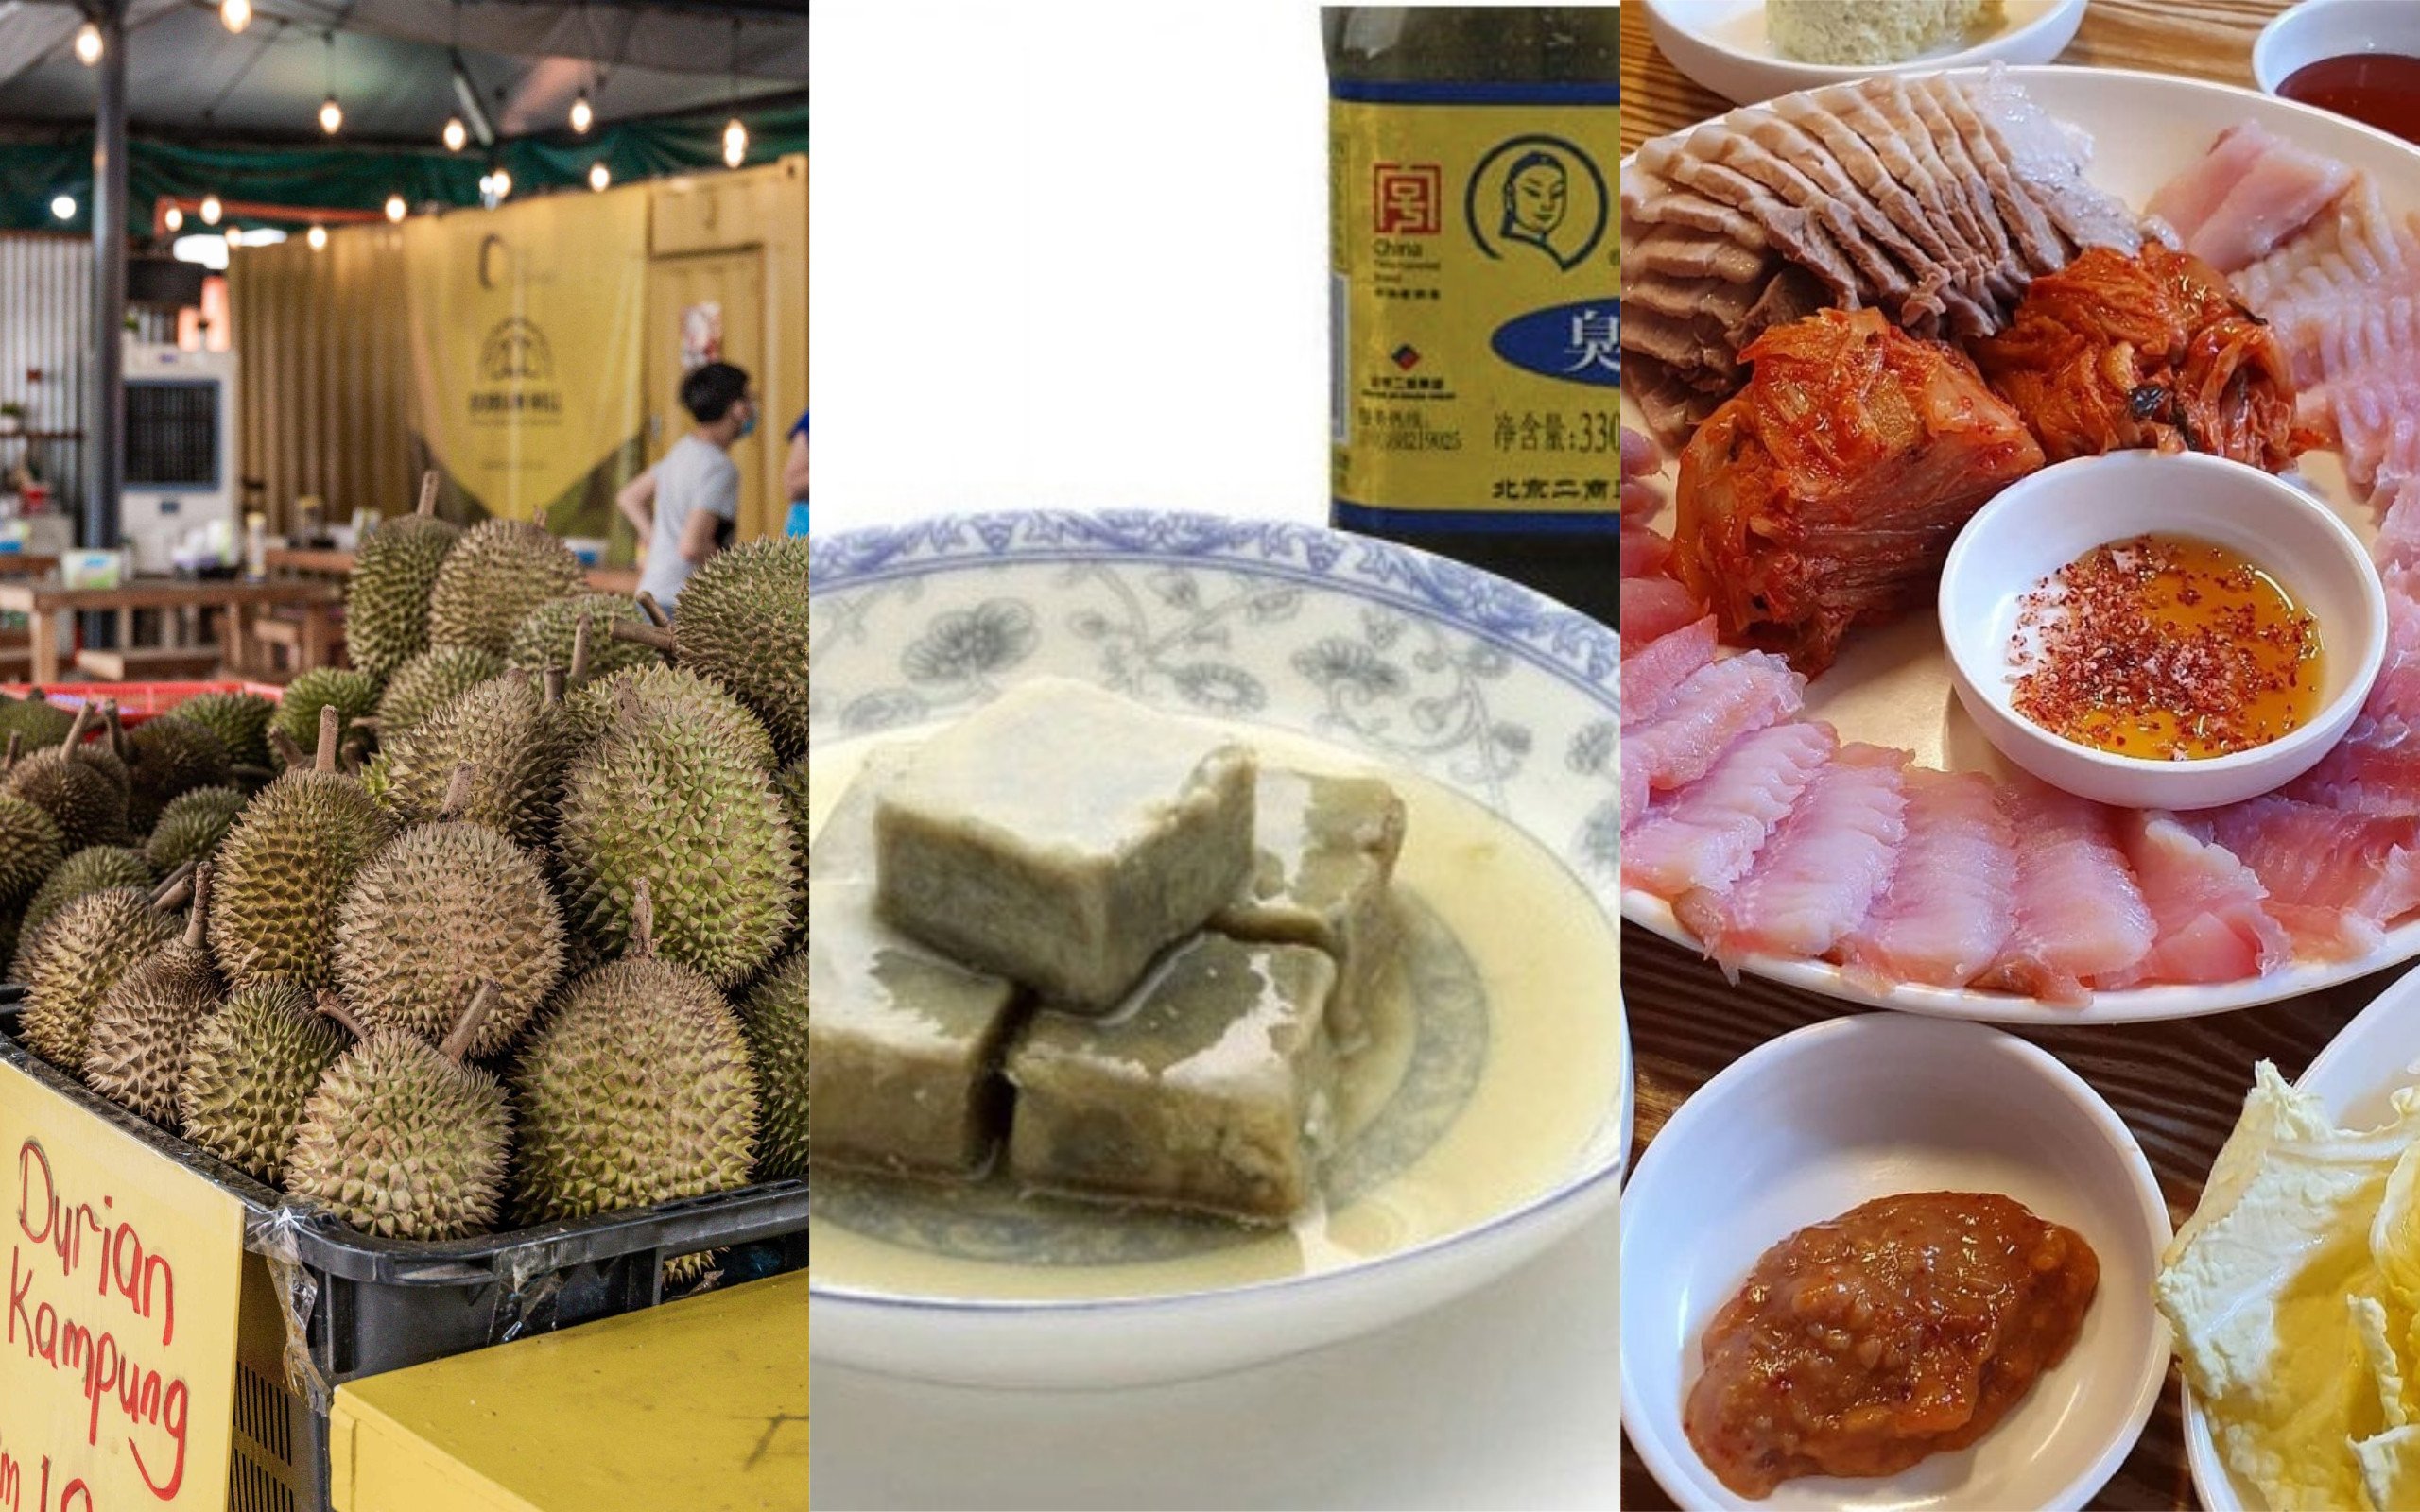 Durian, stinky tofu and hongeo-hoe. Photos: AFP, @hong33775997/Twitter, @steve_jaehoon/Instagram